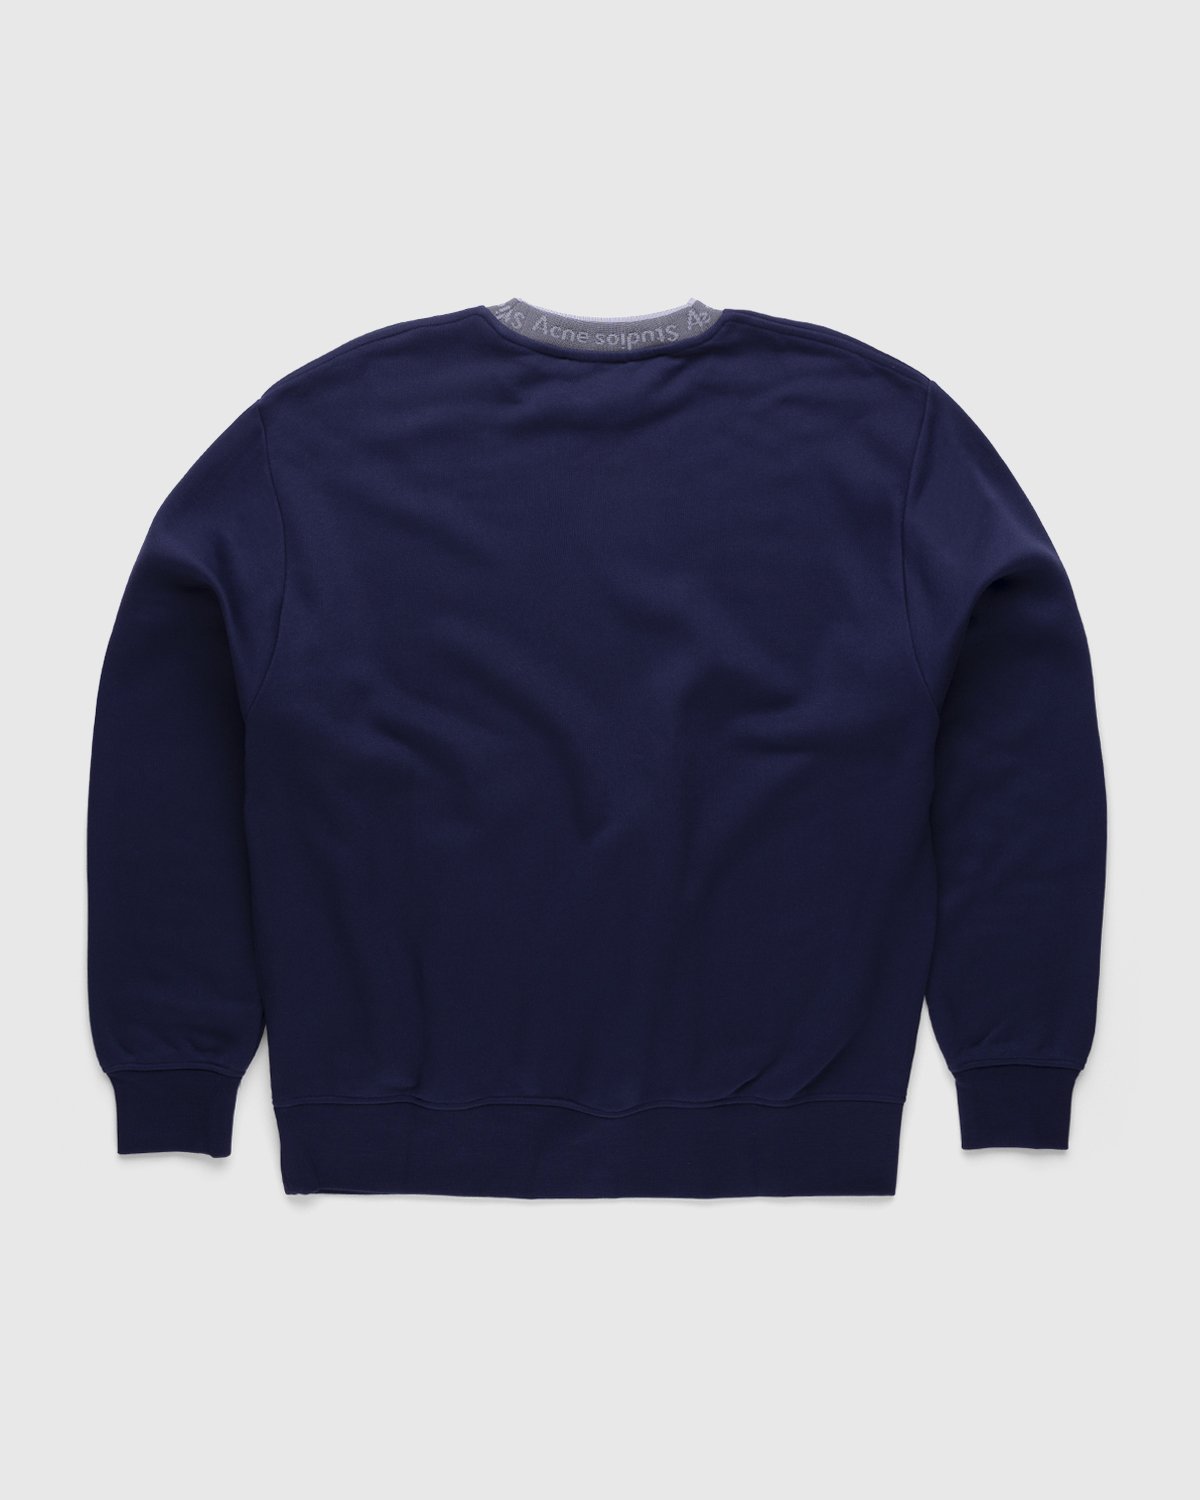 Acne Studios - Logo Rib Sweatshirt Indigo Blue - Clothing - Blue - Image 2